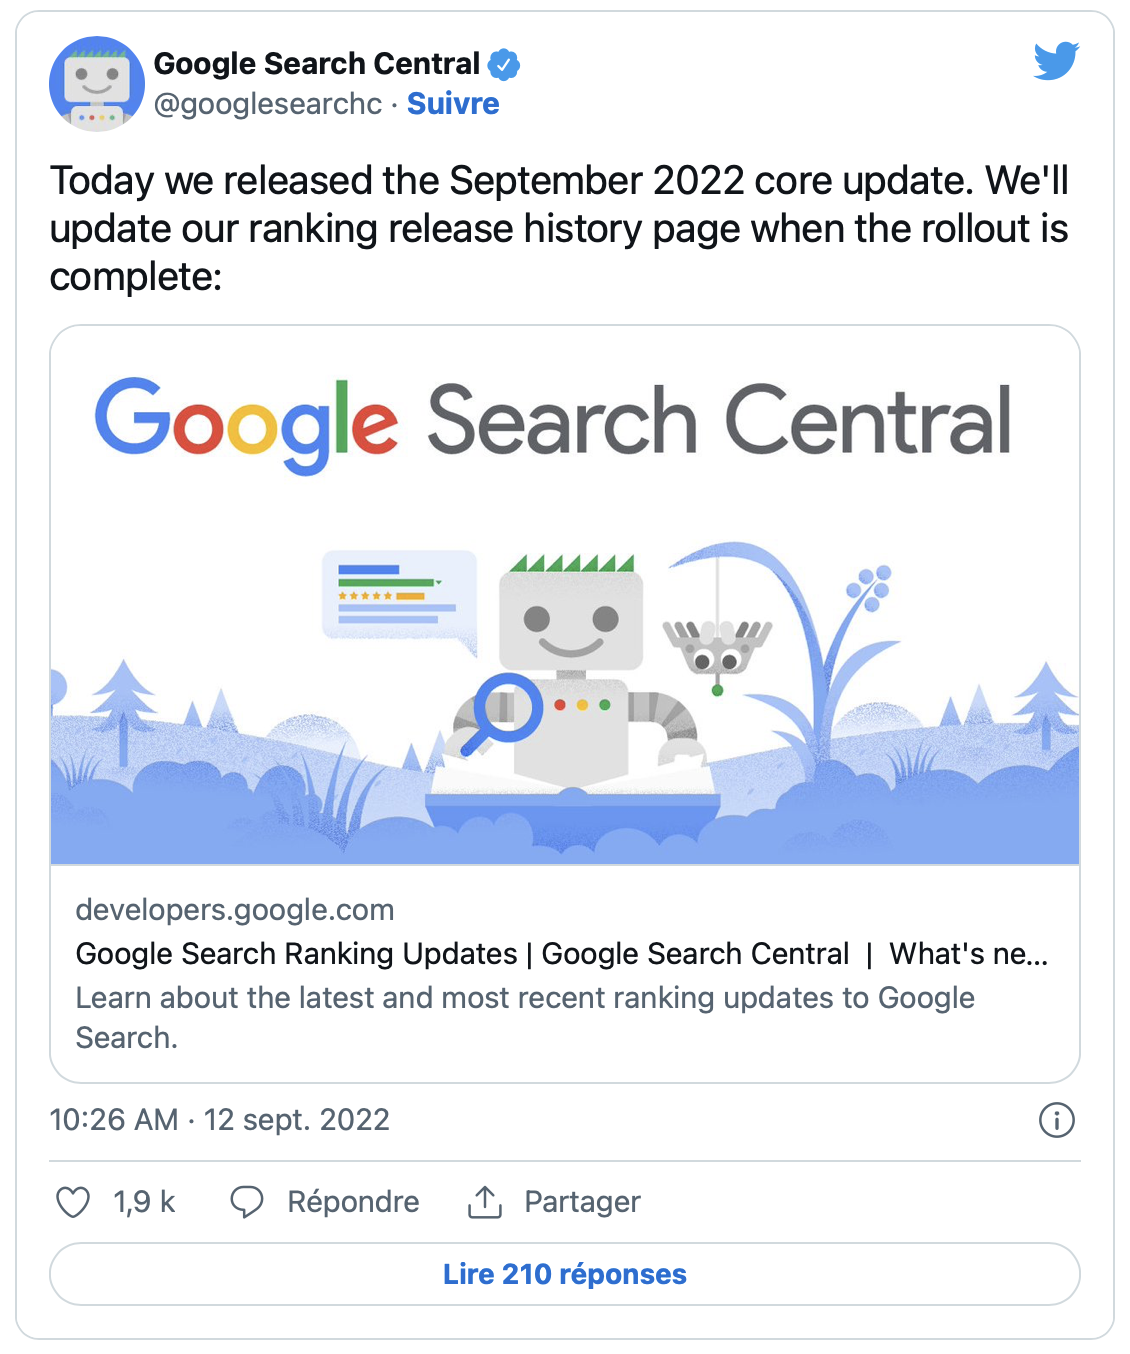 tuit de google anunciando la actualización del núcleo de septiembre de 2022